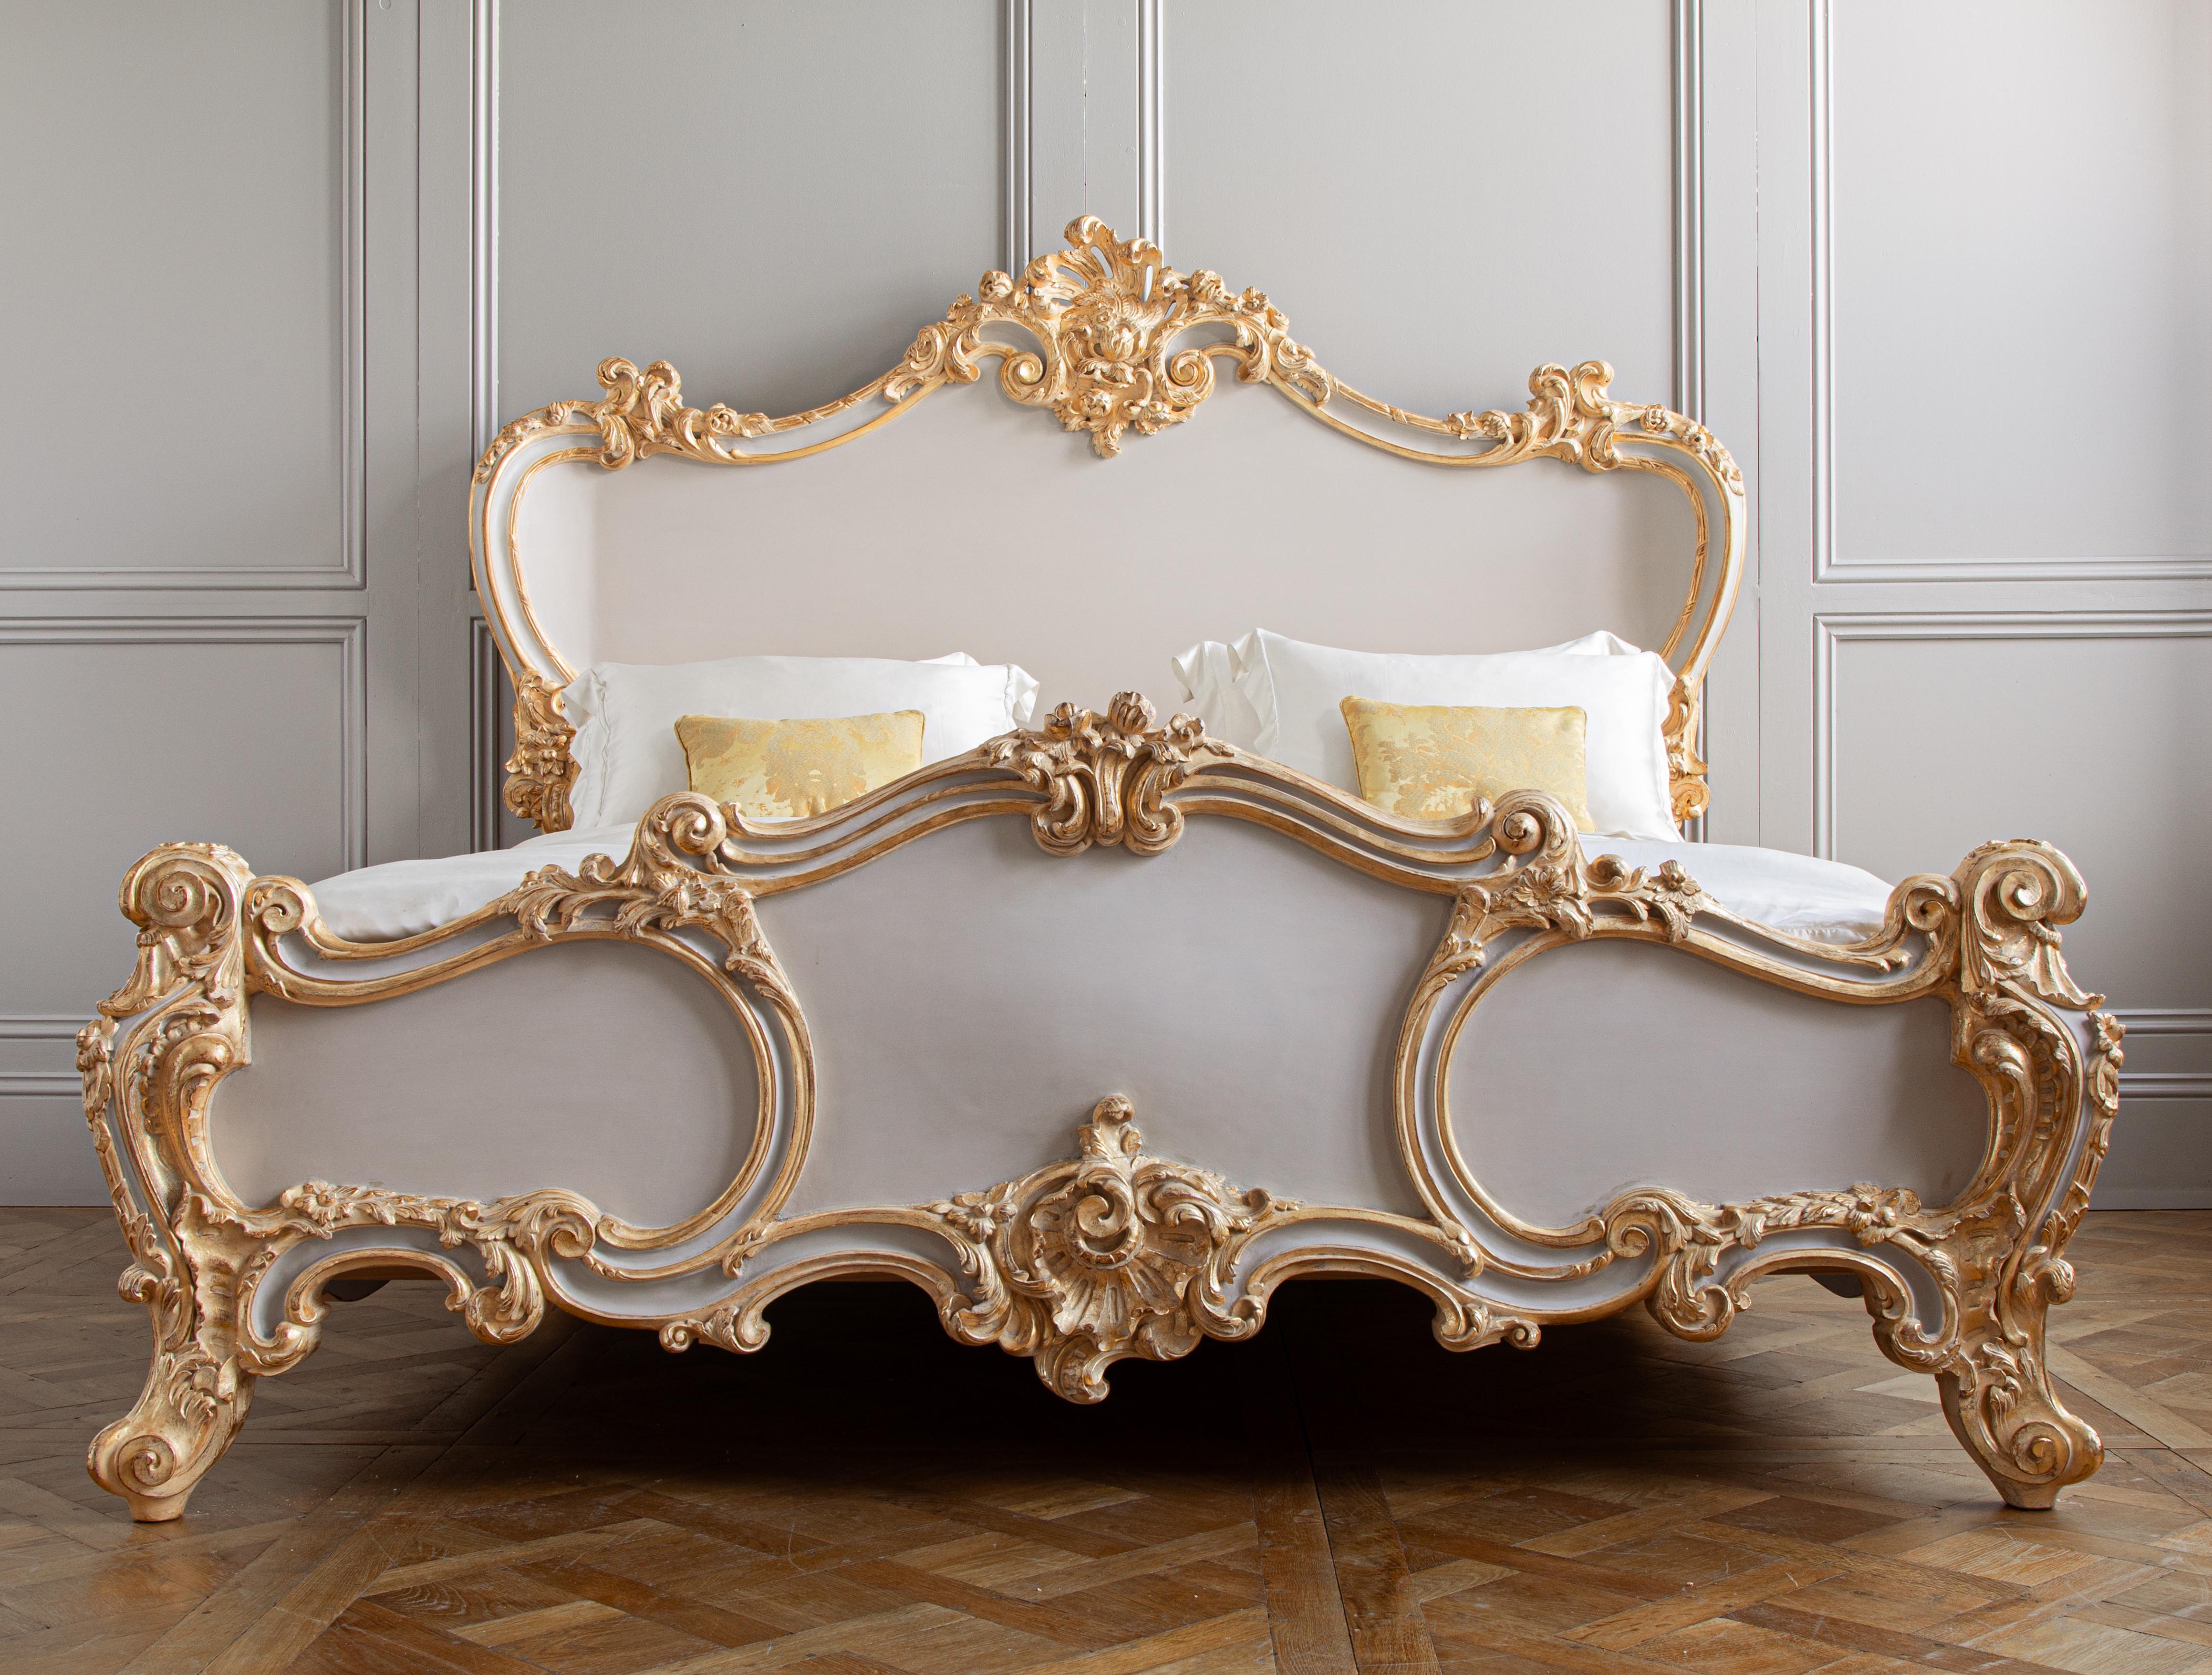 Unser ikonisches Cherub-Bett war das erste Bett, das wir im Rahmen unserer Bemühungen um wunderschön handgeschnitzte Möbel mit dem Ziel entwickelt haben, alle Nuancen antiker Schnitzereien einzufangen. Diese Stücke werden von Handwerksmeistern